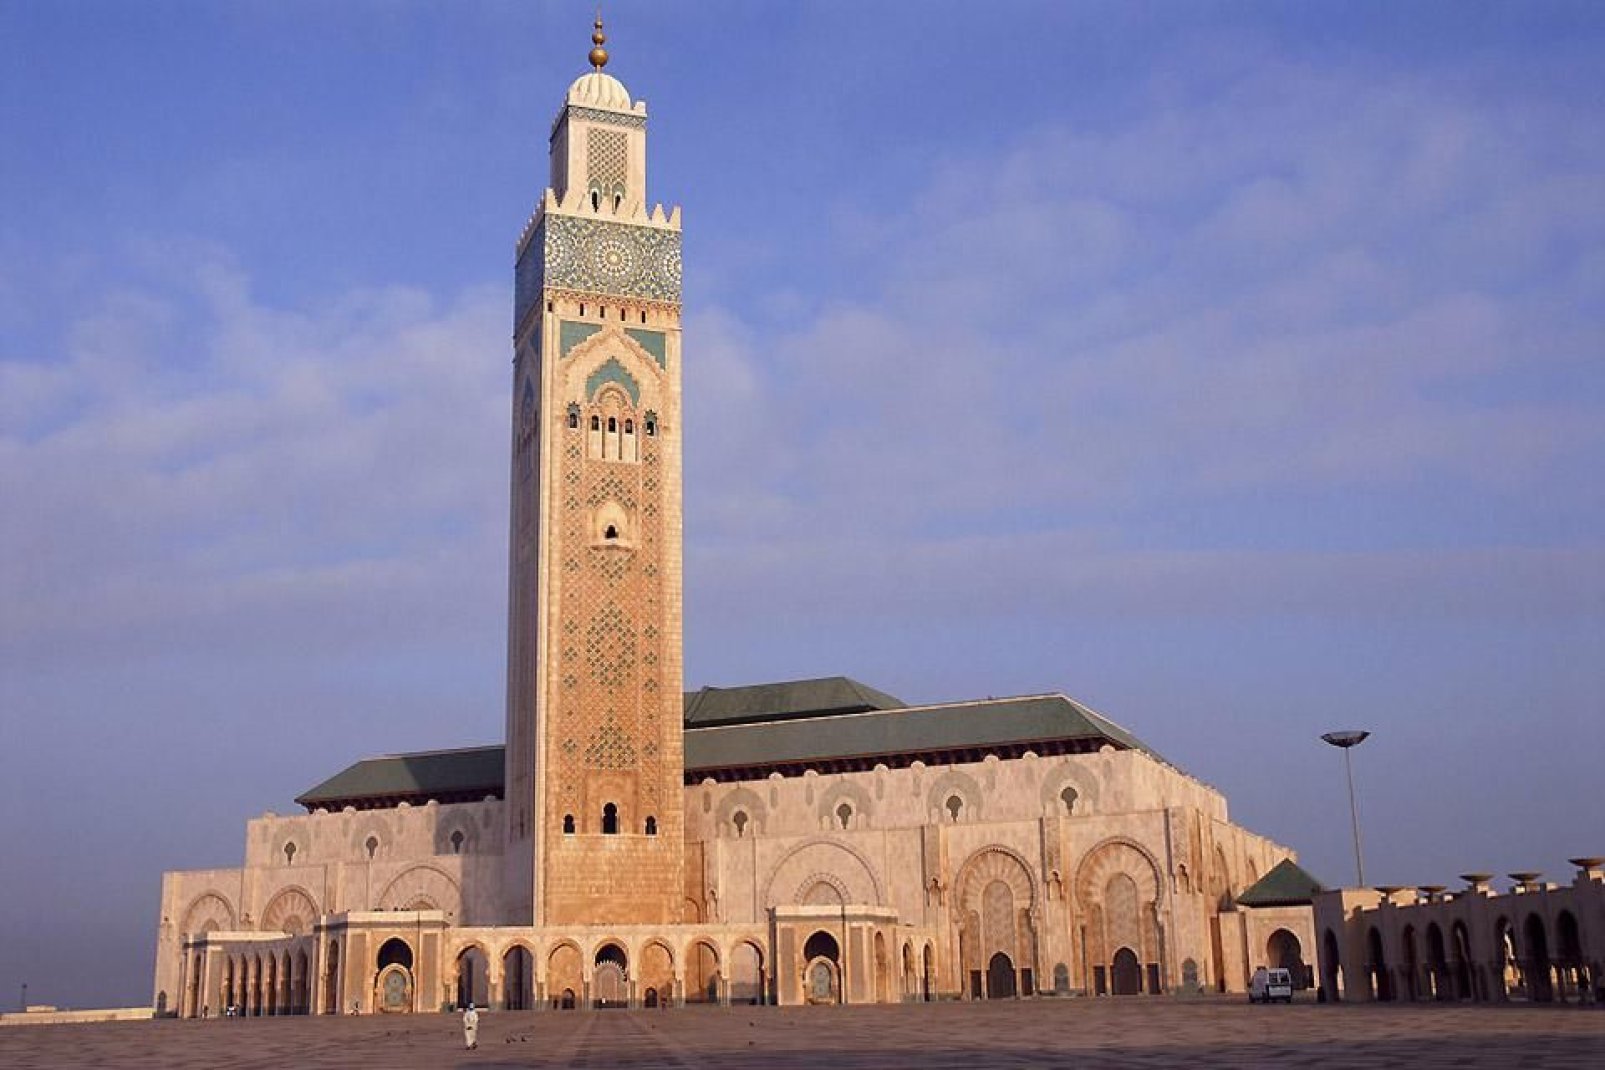 Die Moschee Hassan II, die größte Moschee Marokkos (und fünftgrößte der Welt) wurde über dem Meer errichtet.